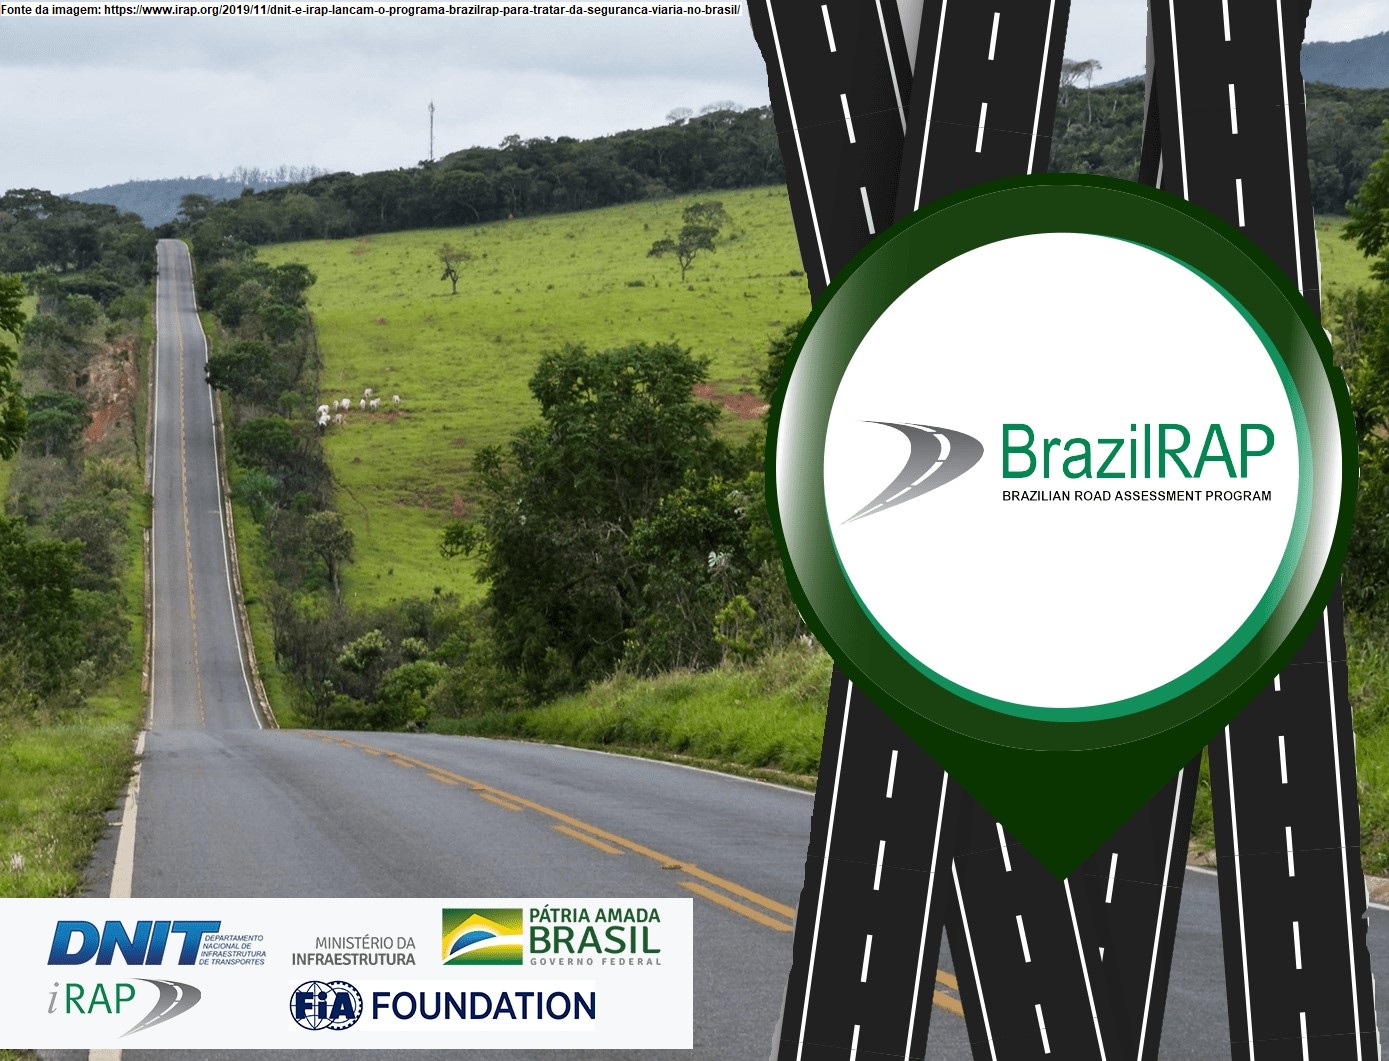 https://www.irap.org/2019/11/dnit-e-irap-lancam-o-programa-brazilrap-para-tratar-da-seguranca-viaria-no-brasil/